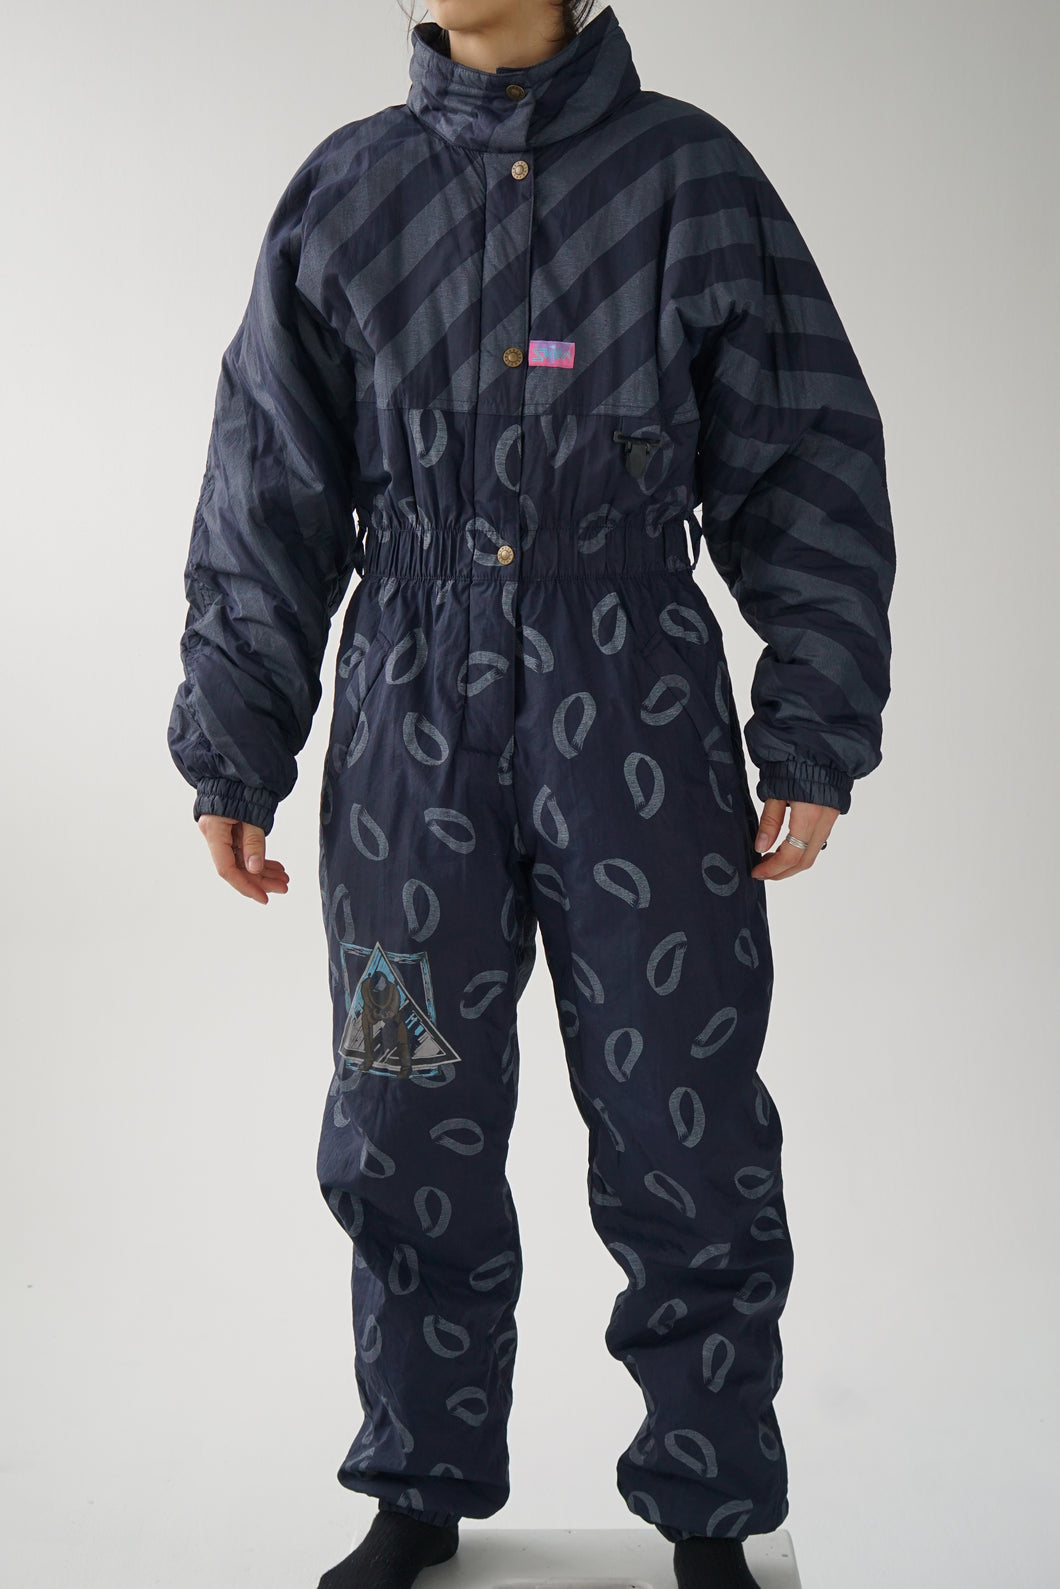 One piece vintage Skila ski suit, snow suit bleu foncé avec motifs ski taille 40